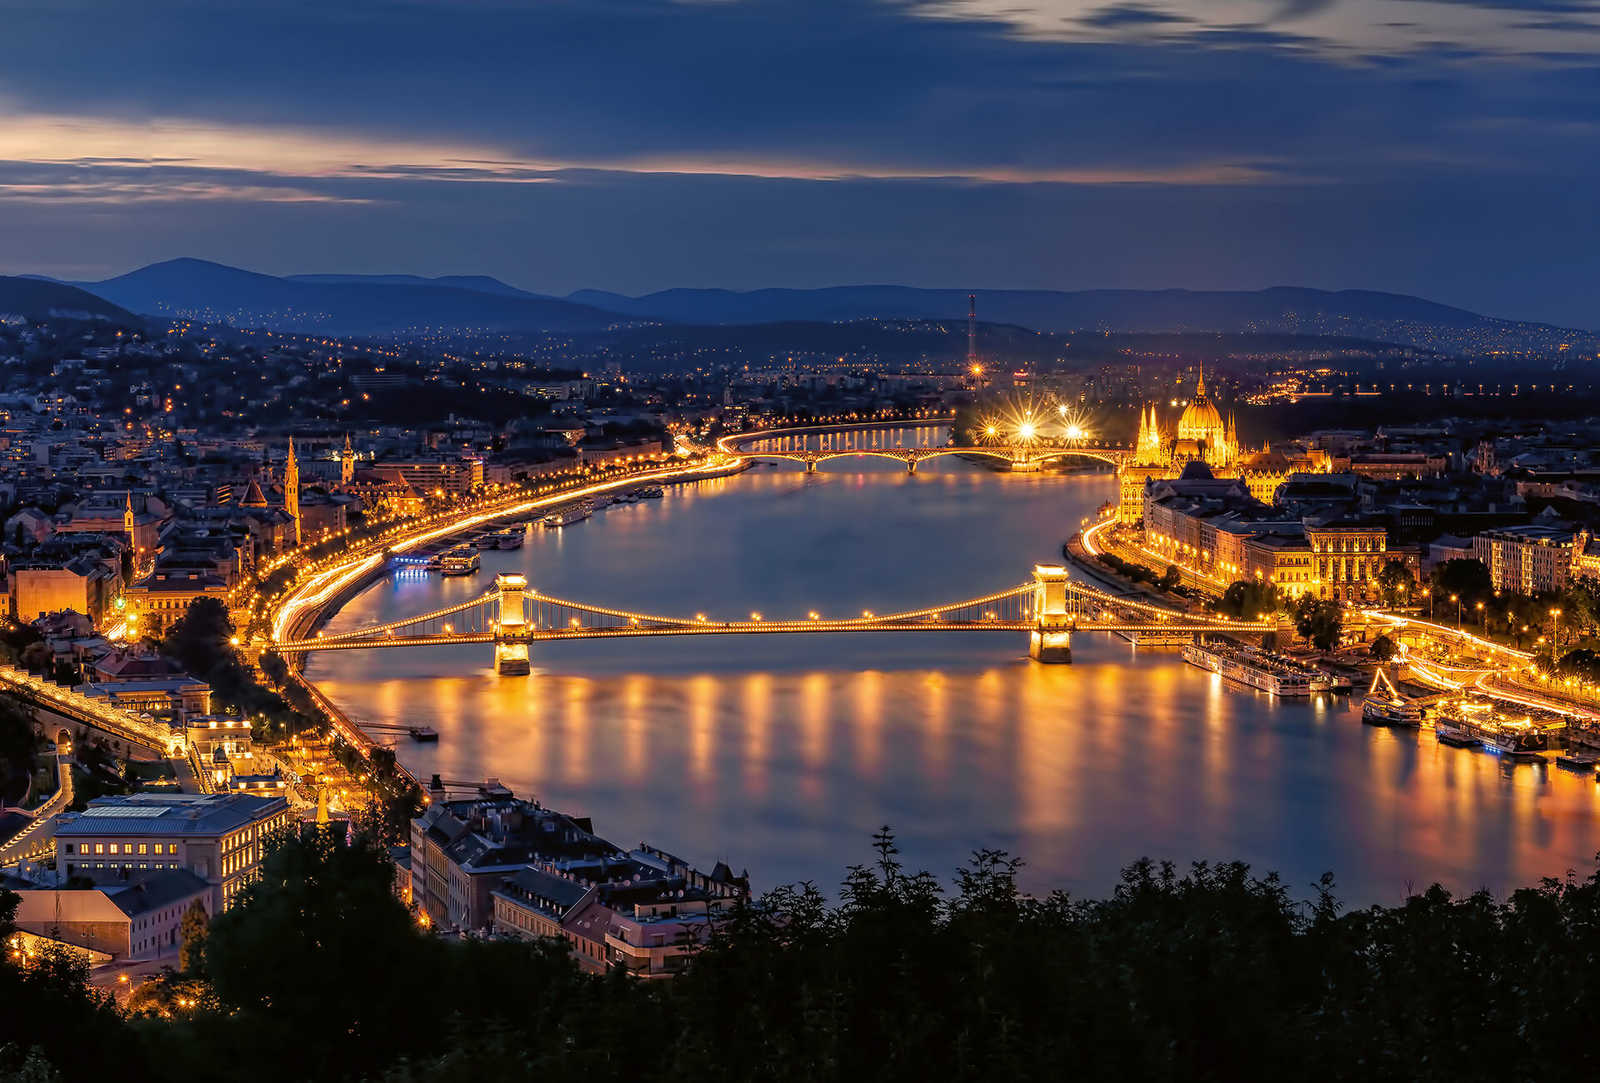         Fototapete Stadt Budapest bei Nacht – Gelb, Blau, Weiß
    